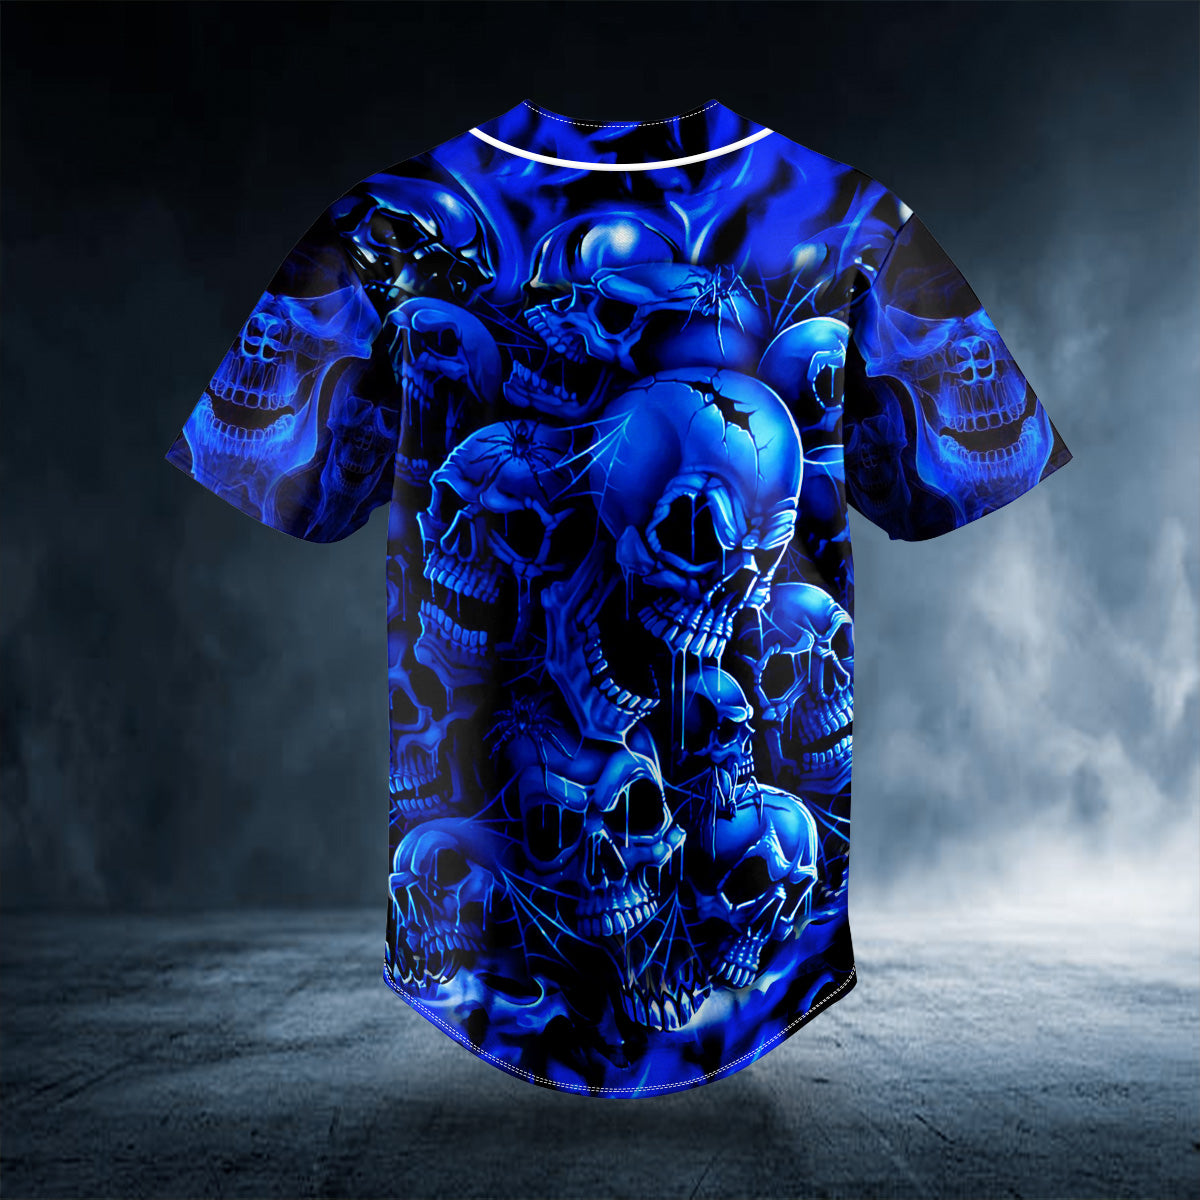 blue cracked skull custom baseball jersey bsj 594 yuwfi